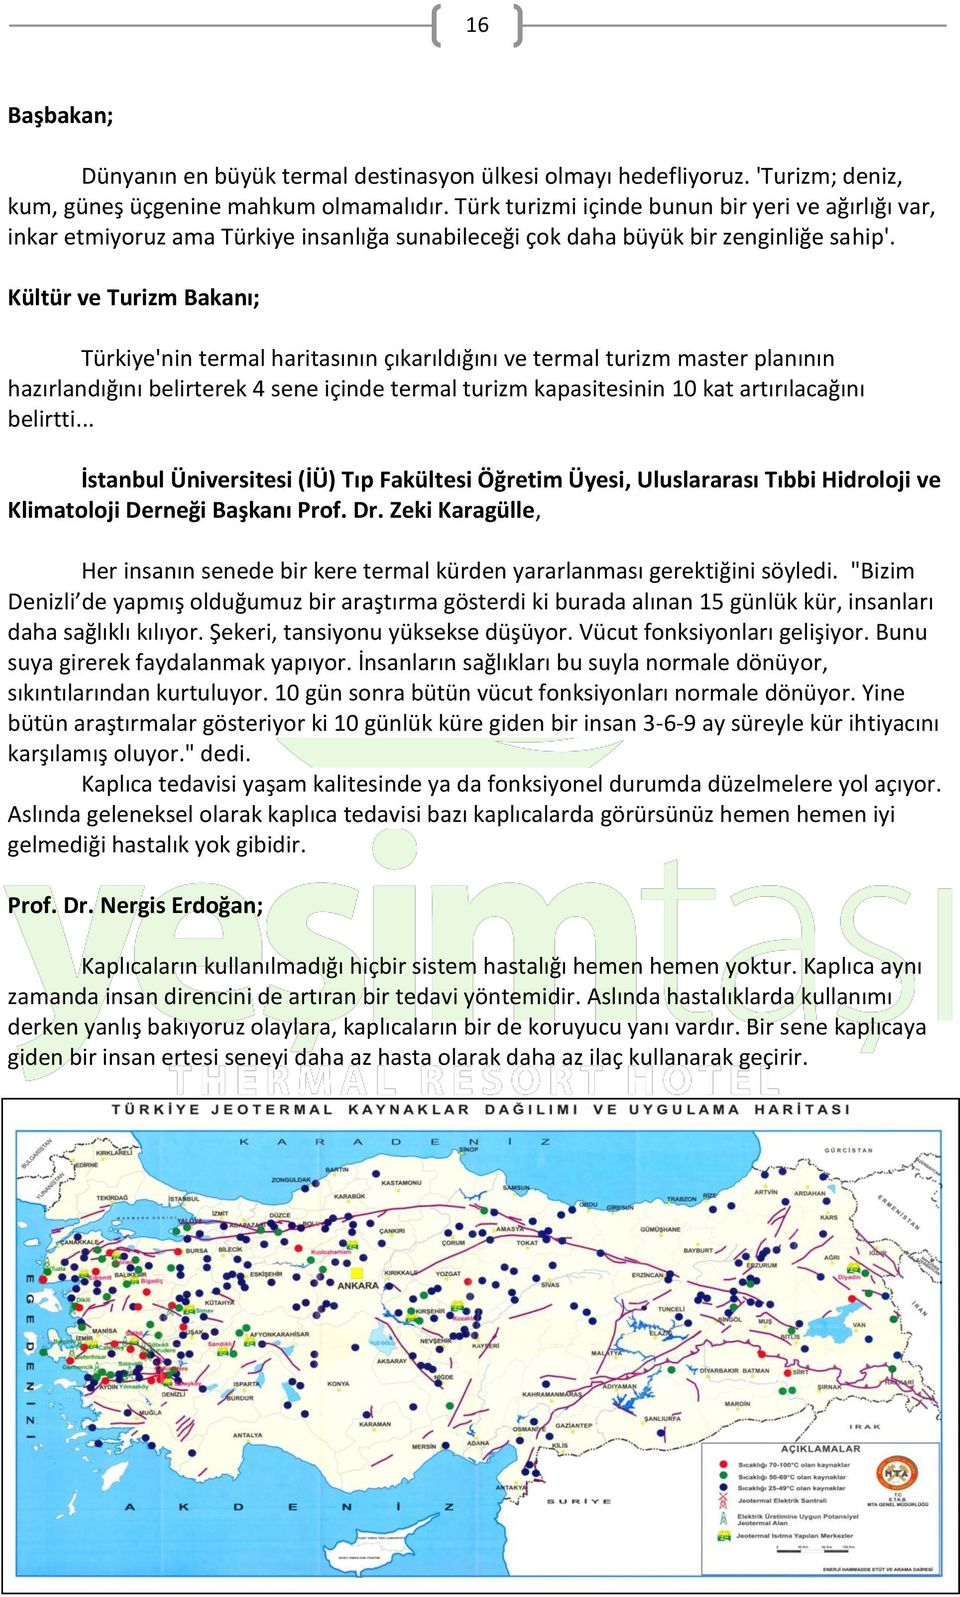 Kültür ve Turizm Bakanı; Türkiye'nin termal haritasının çıkarıldığını ve termal turizm master planının hazırlandığını belirterek 4 sene içinde termal turizm kapasitesinin 10 kat artırılacağını